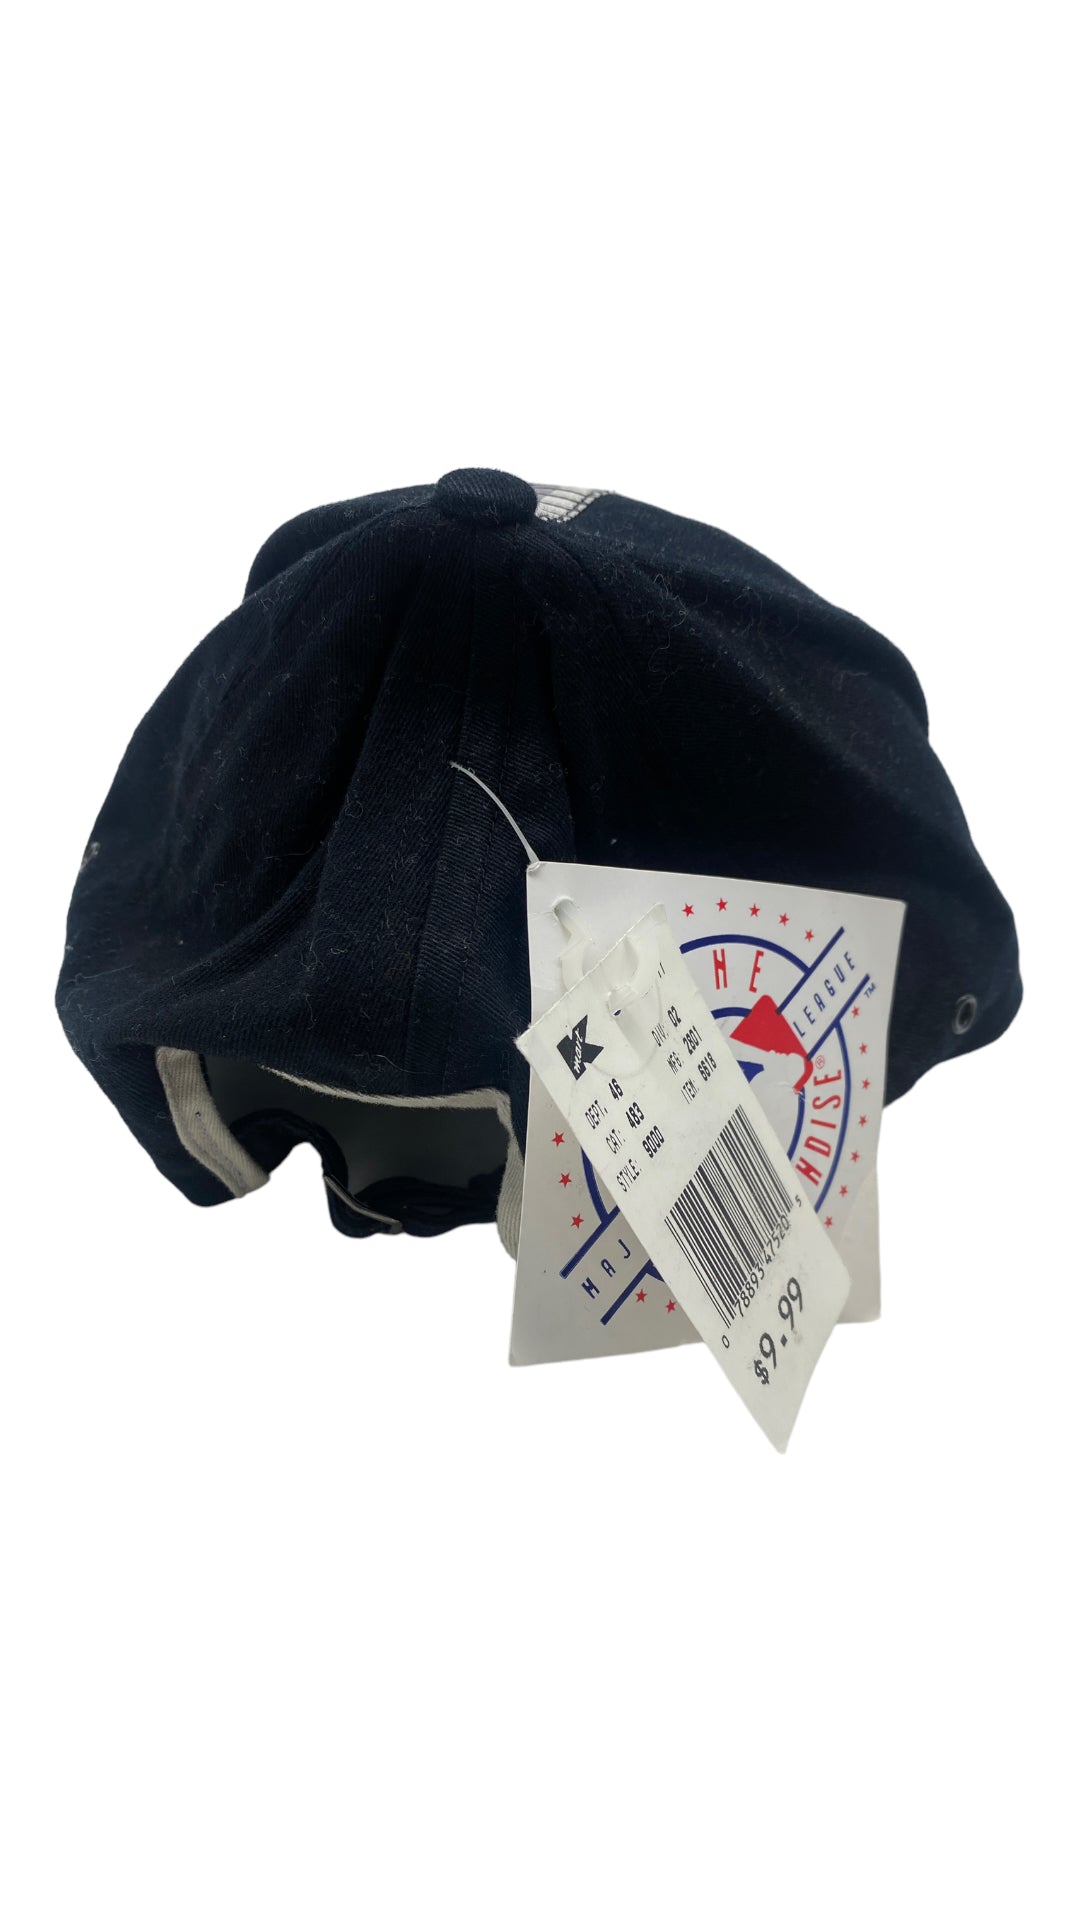 VTG White Sox Strapback Hat